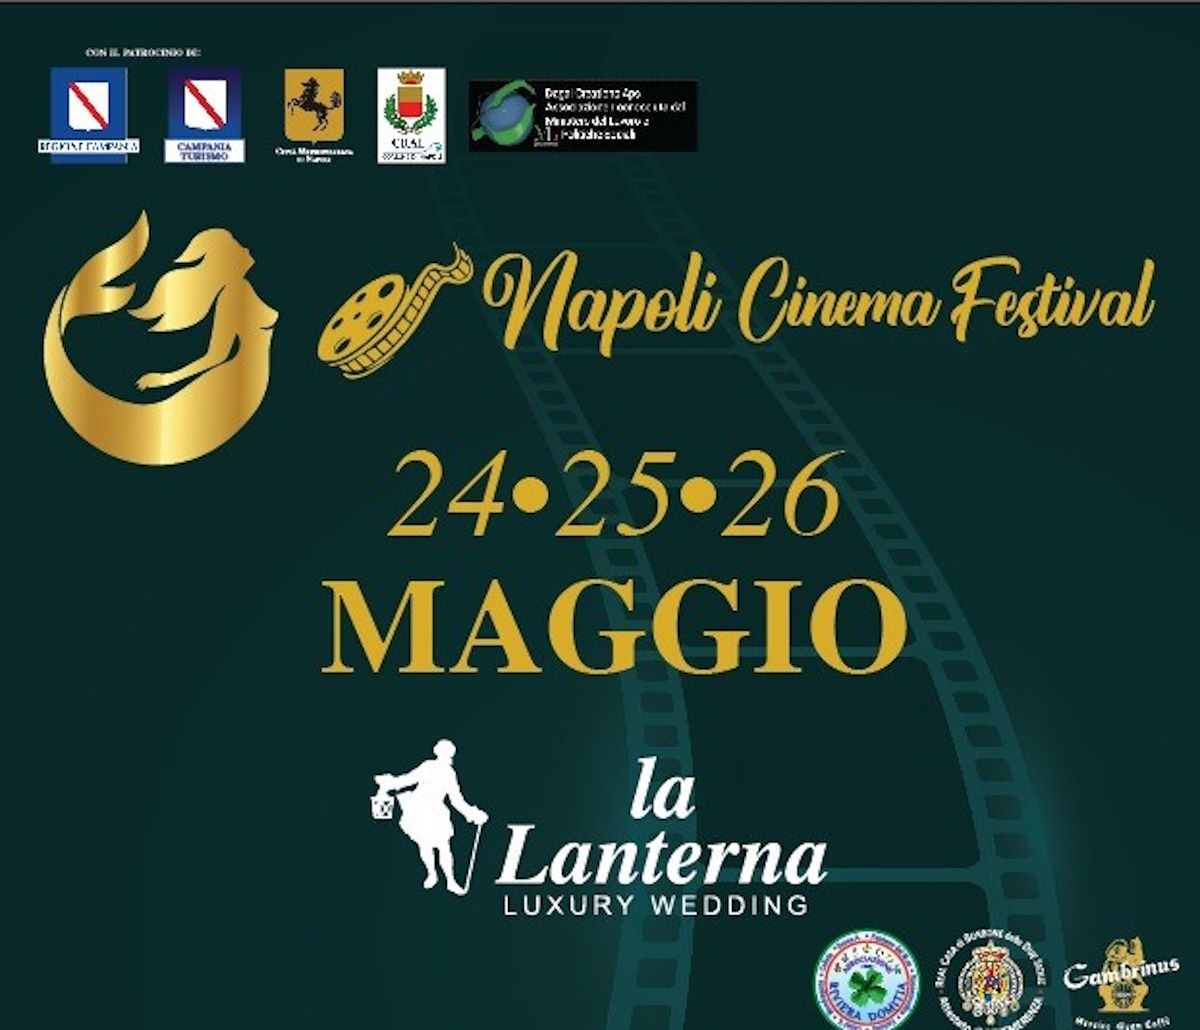 La prima del Film “Tic Toc” con Eva Henger e il cast al Napoli Cinema Festival Napoli Capitale del Cinema tre giorni intensi